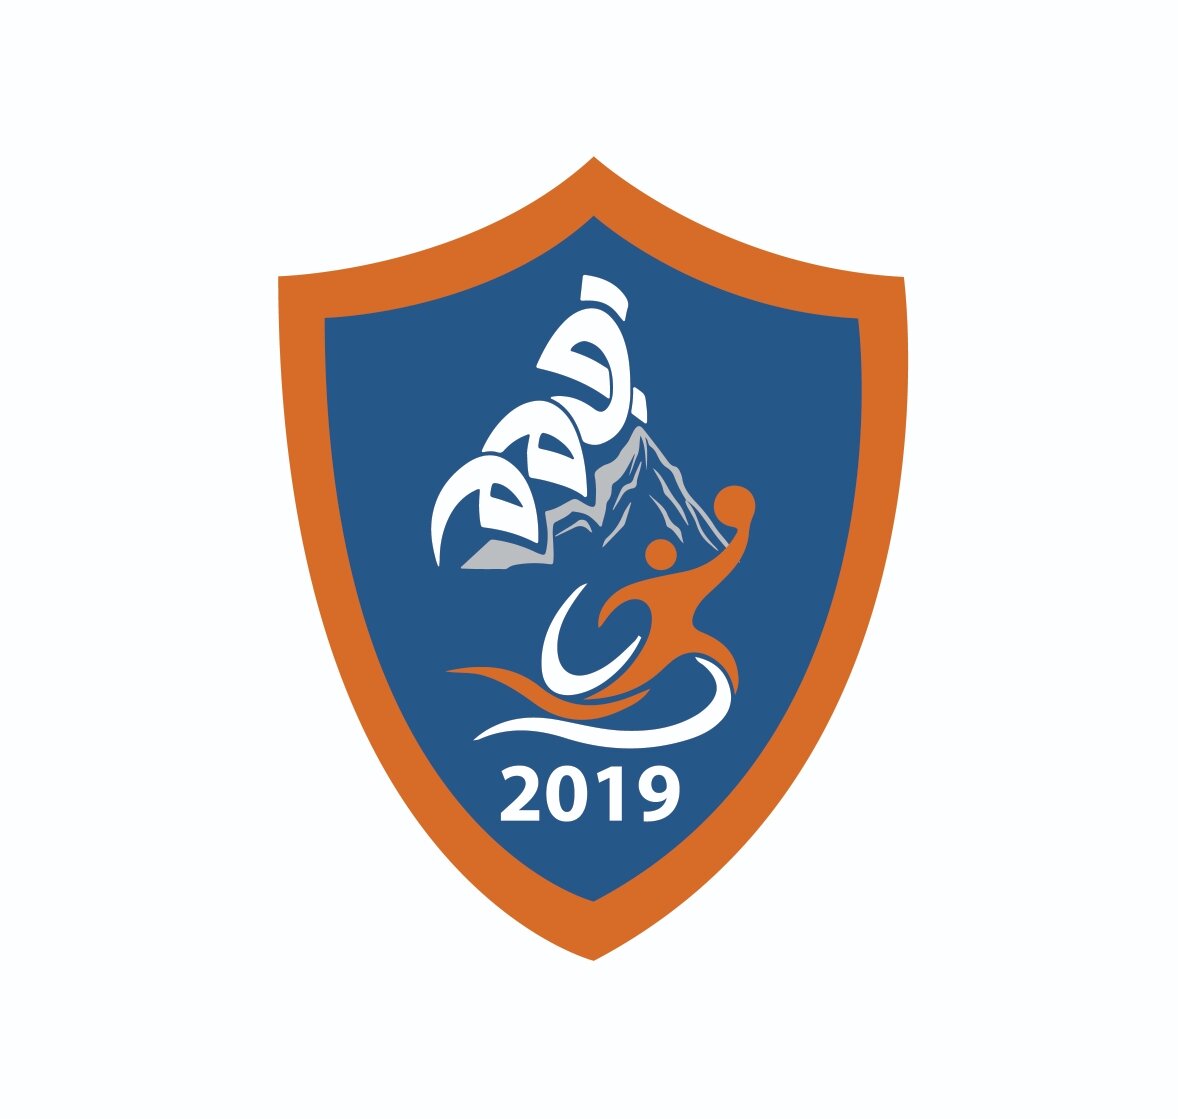 AL Qimam Sport club logo design_201220_RM-02_resized_20210310_093433838.jpg